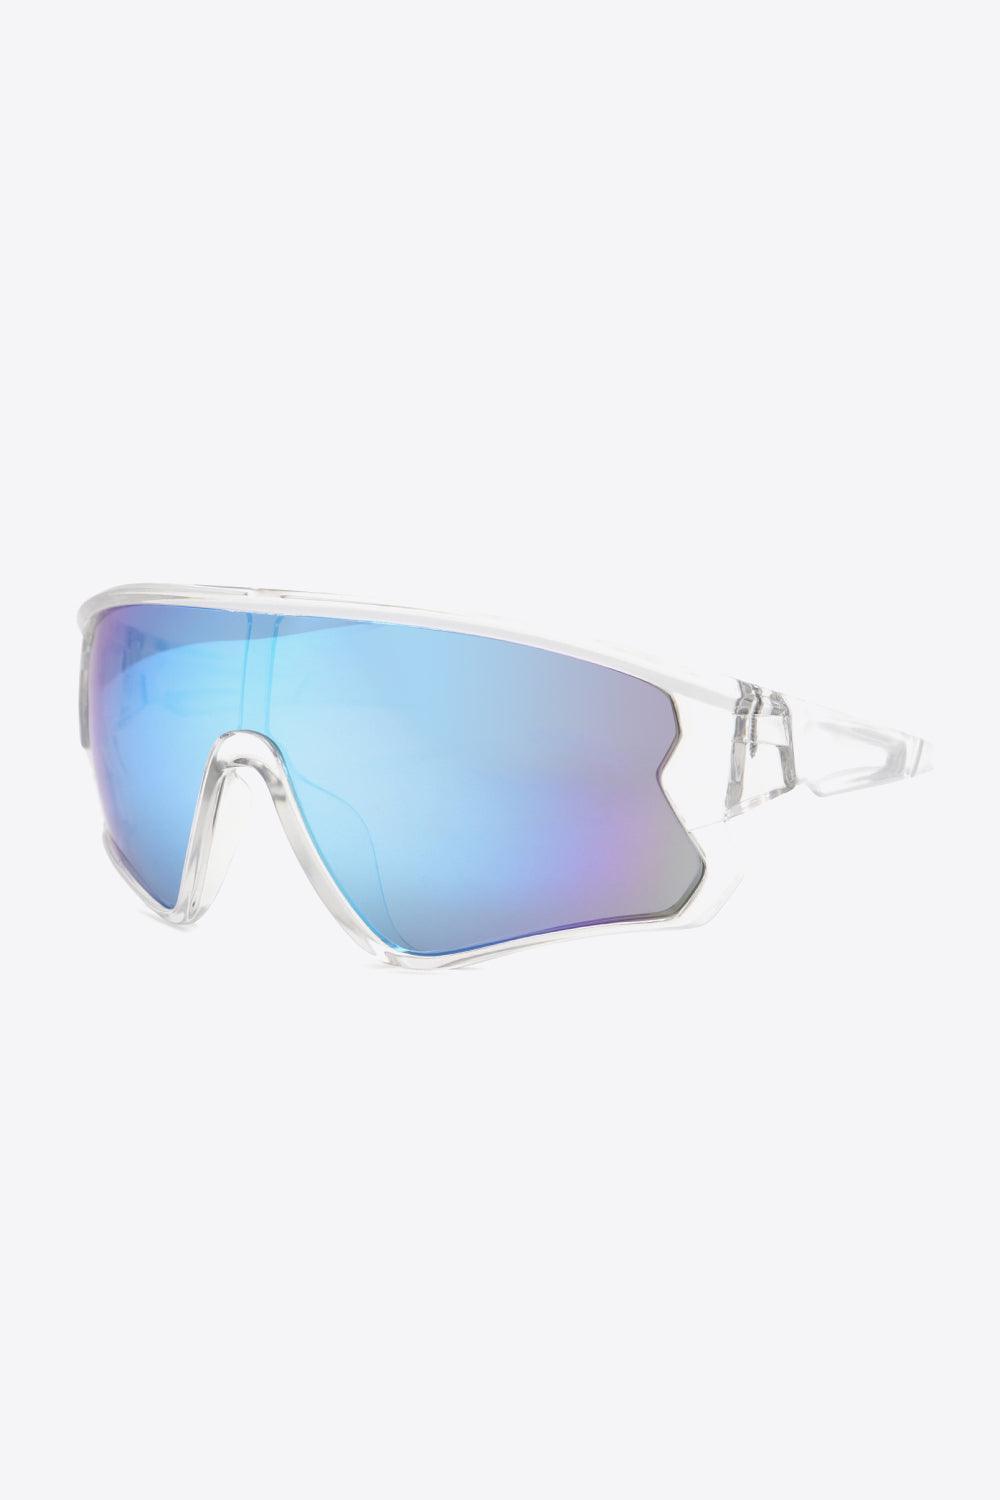 Polycarbonate Frame Aviator Shield Sunglasses - MXSTUDIO.COM